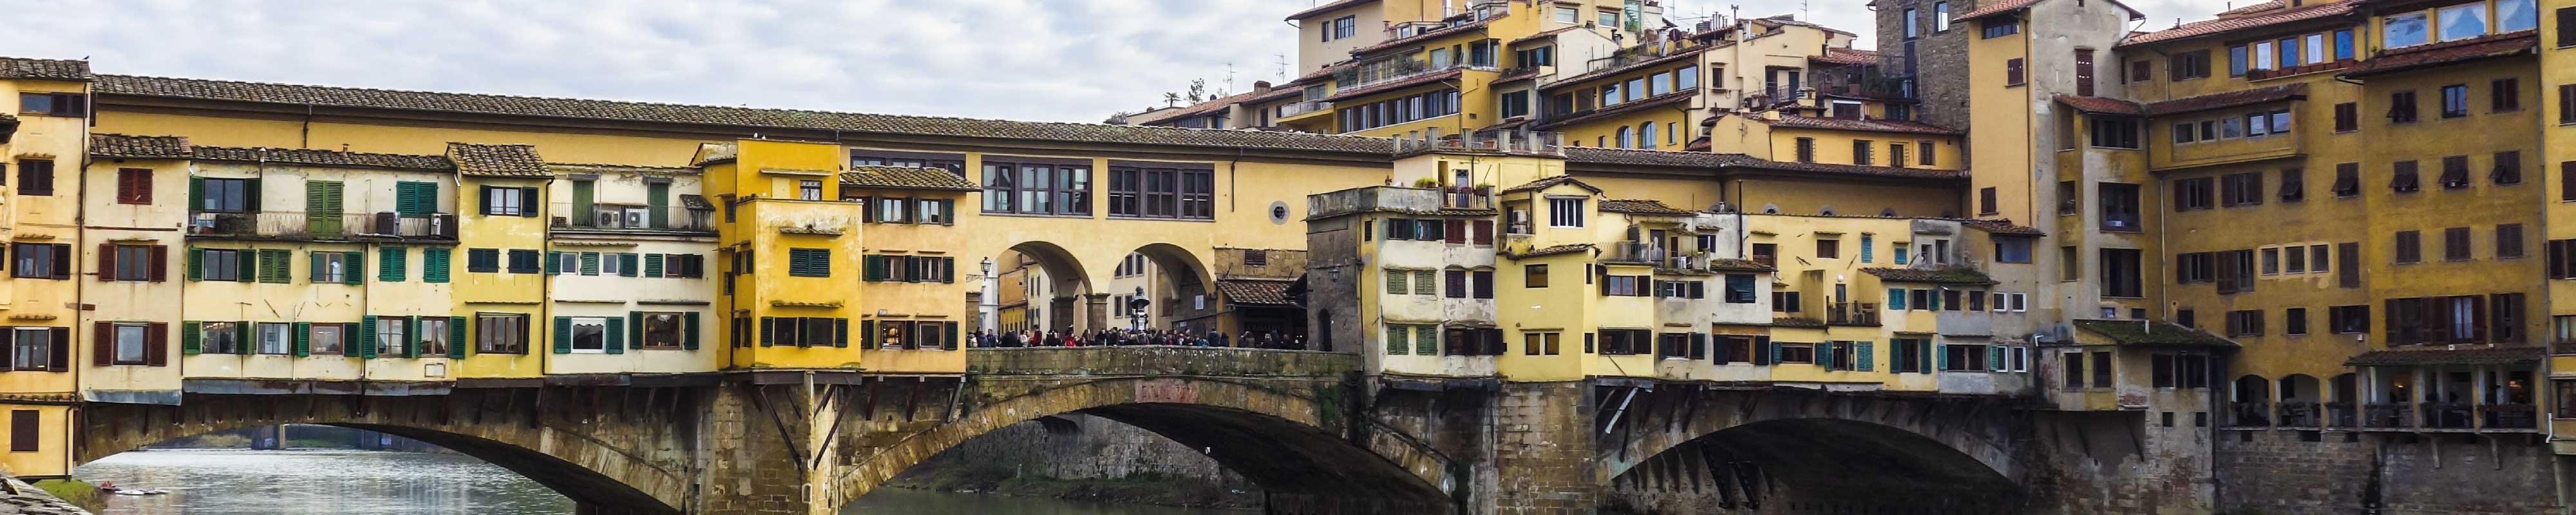 Consigna Equipaje | Ponte Vecchio en Florencia - Nannybag